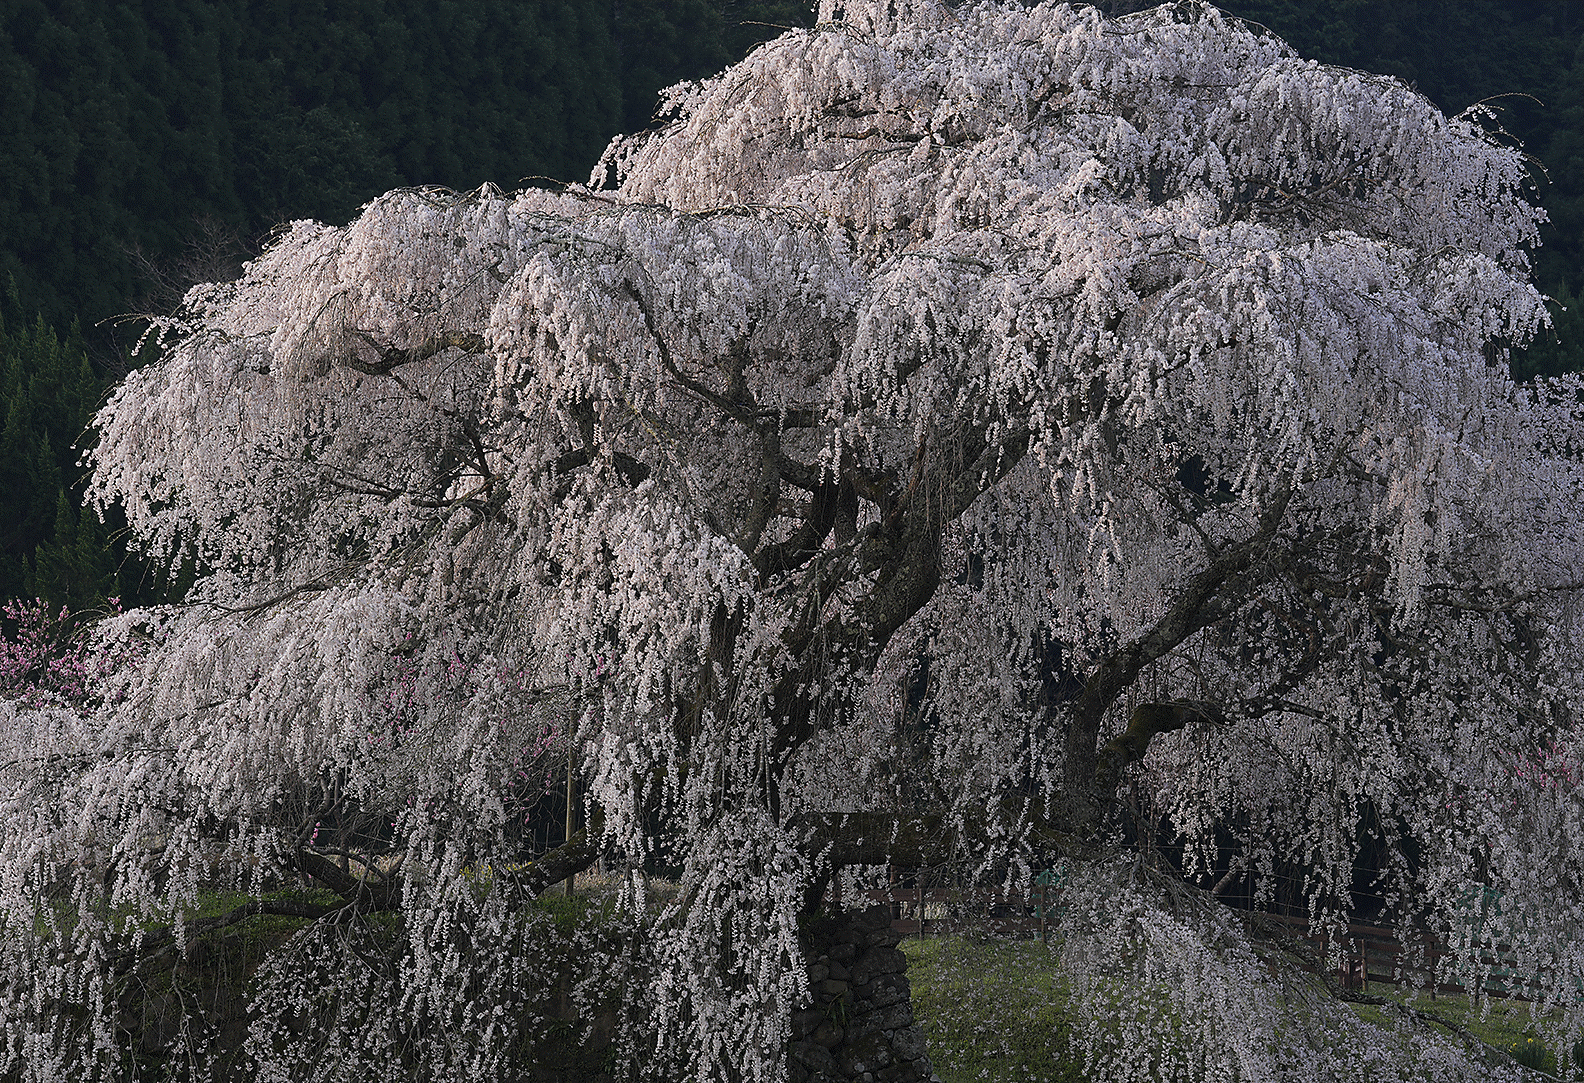 Kép a cseresznyevirágzás csúcspontjáról